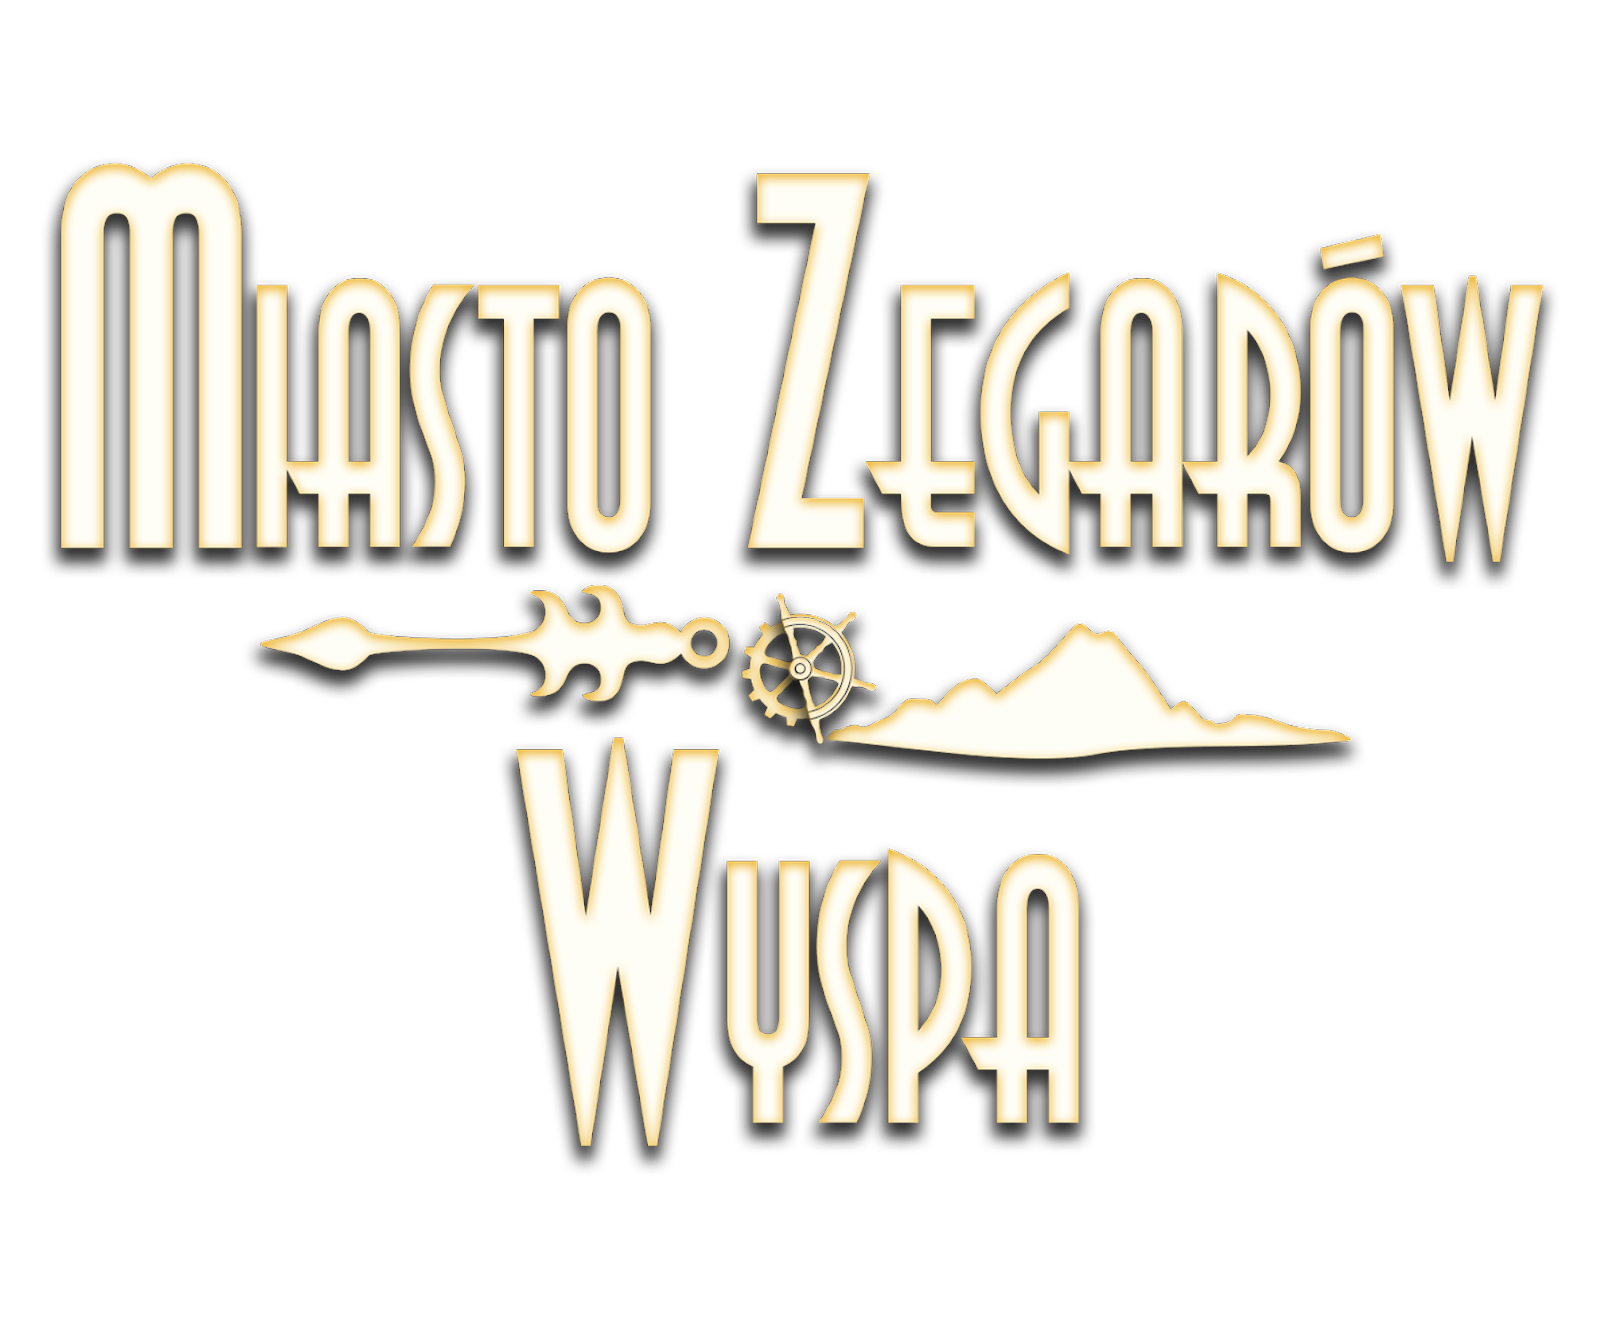 Miasto Zegarów i Wyspa Marcina Dębickiego – fantasy / horror / weird fiction - LOGO